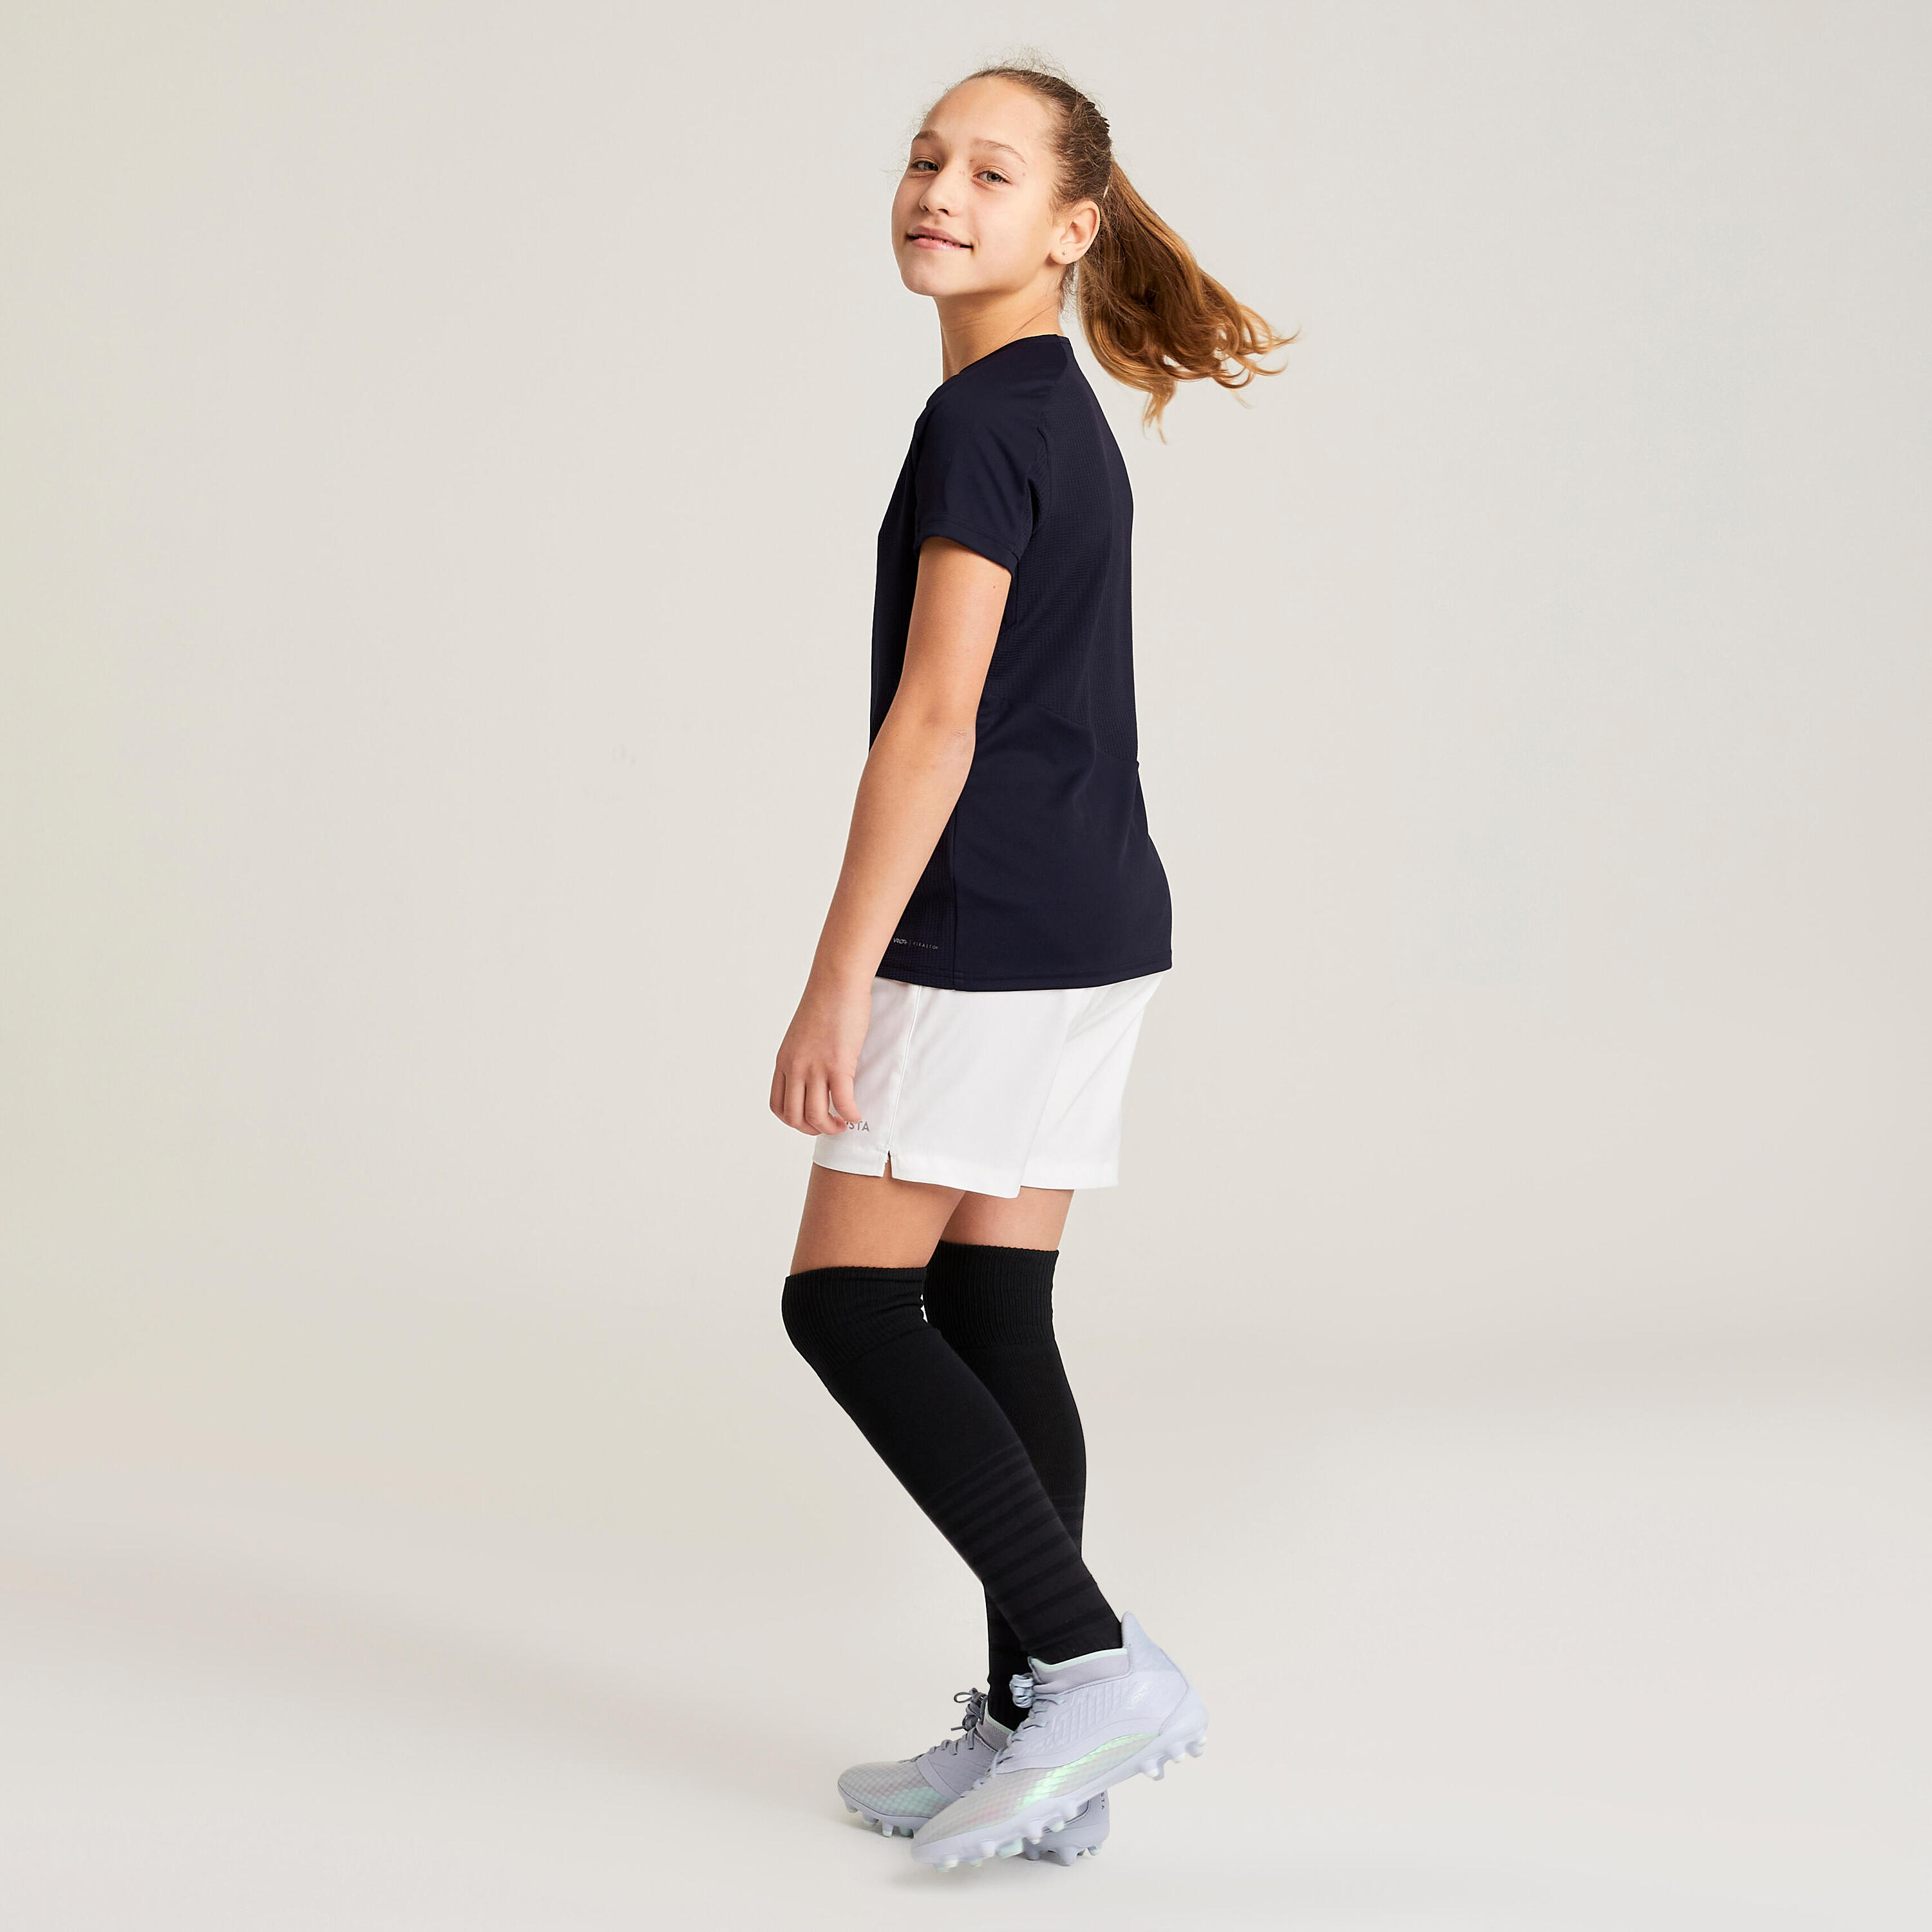 Girls' Football Shirt Viralto - Black 5/10